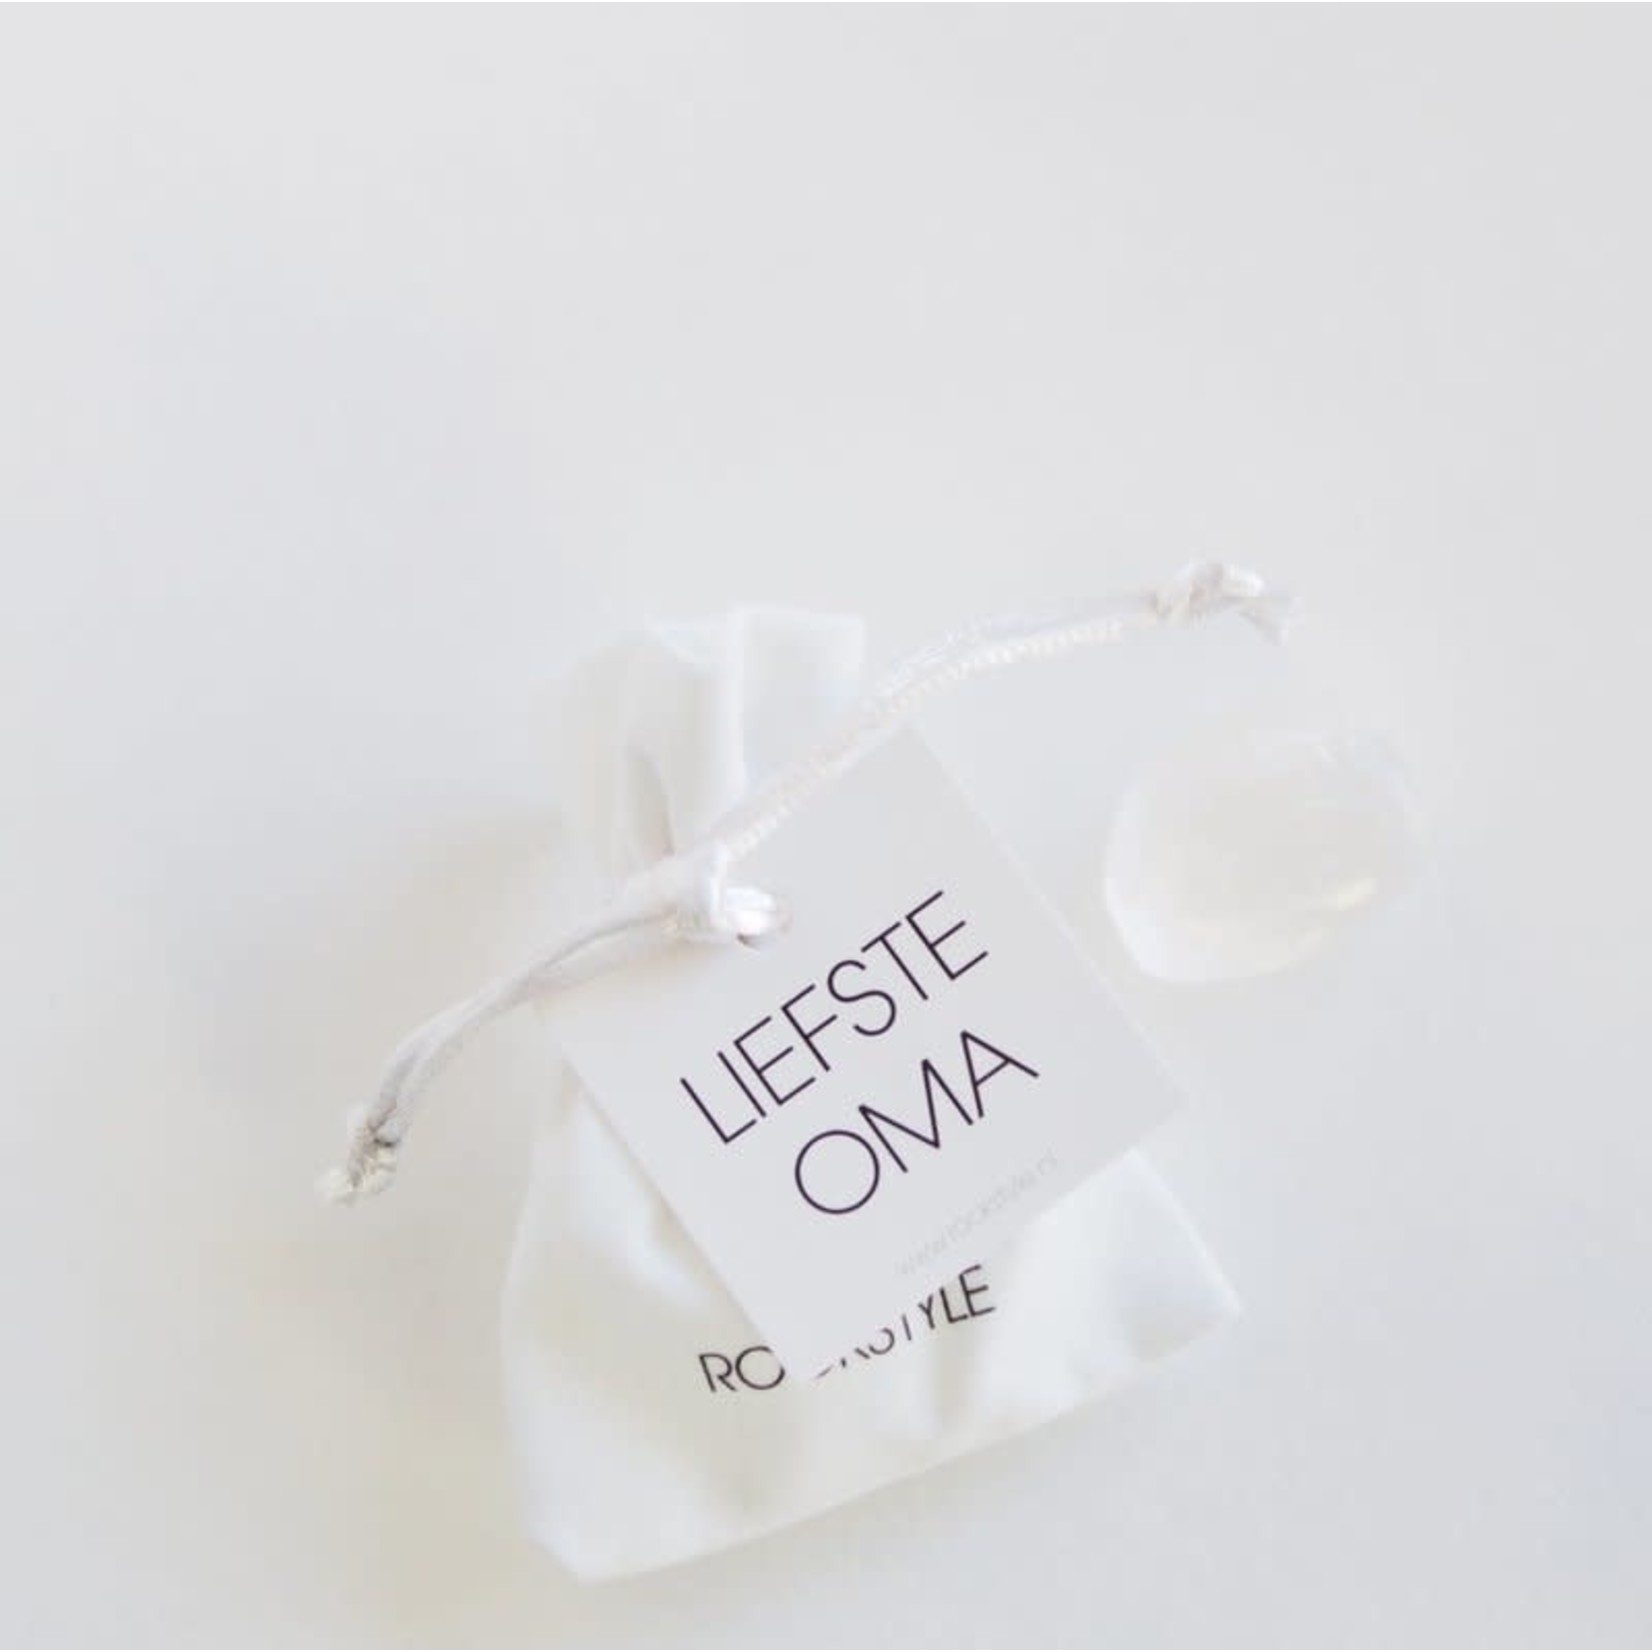 ROCKSTYLE velvet gift bag LIEFSTE OMA - Seleniet